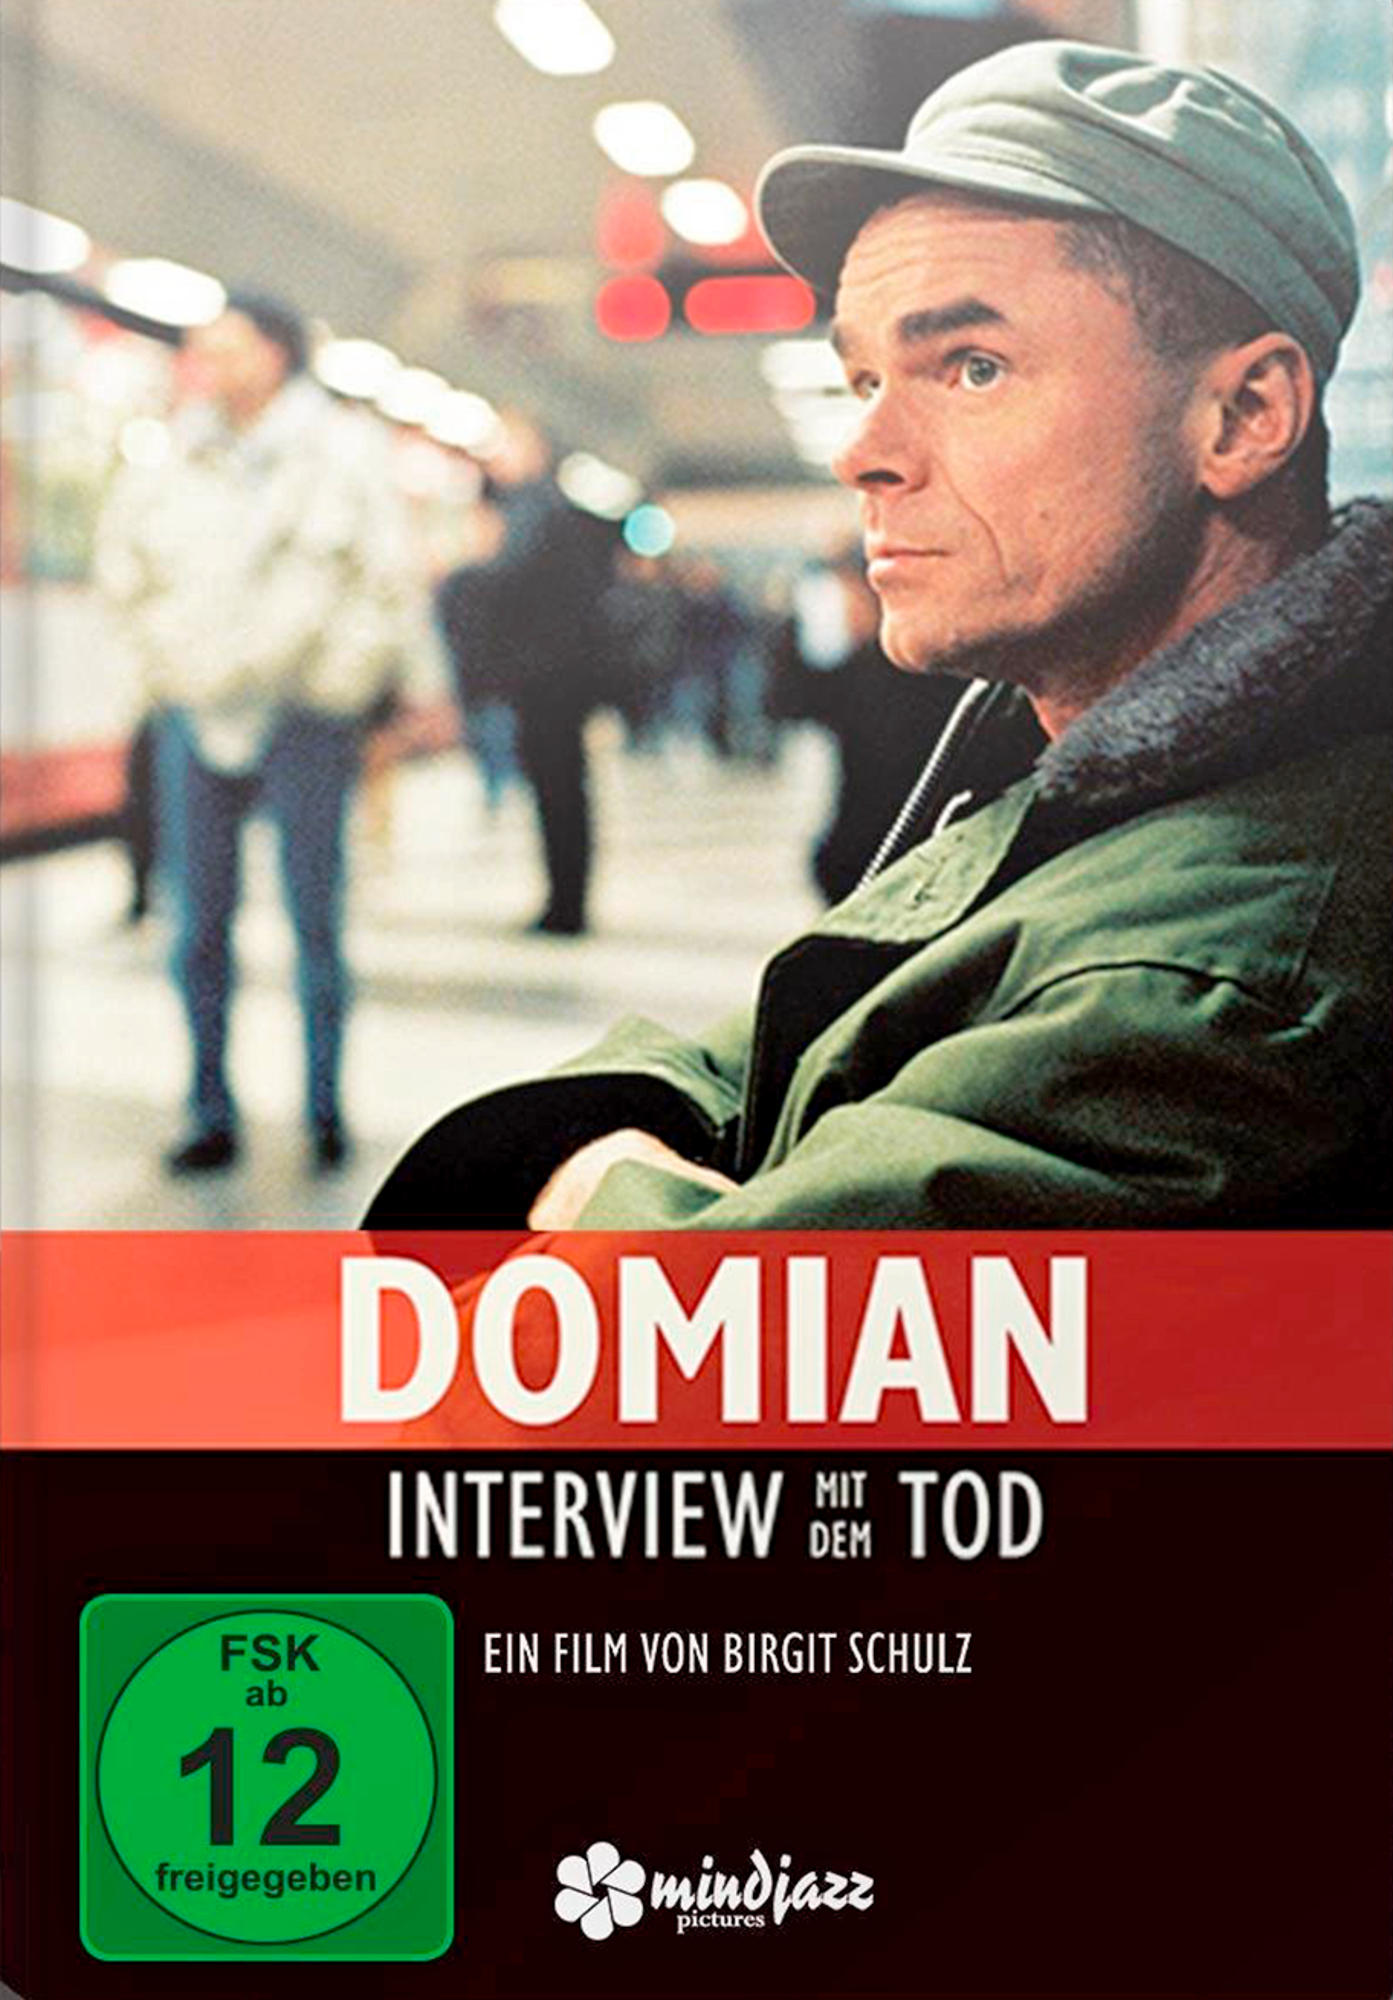 Tod Domian dem - mit Interview DVD